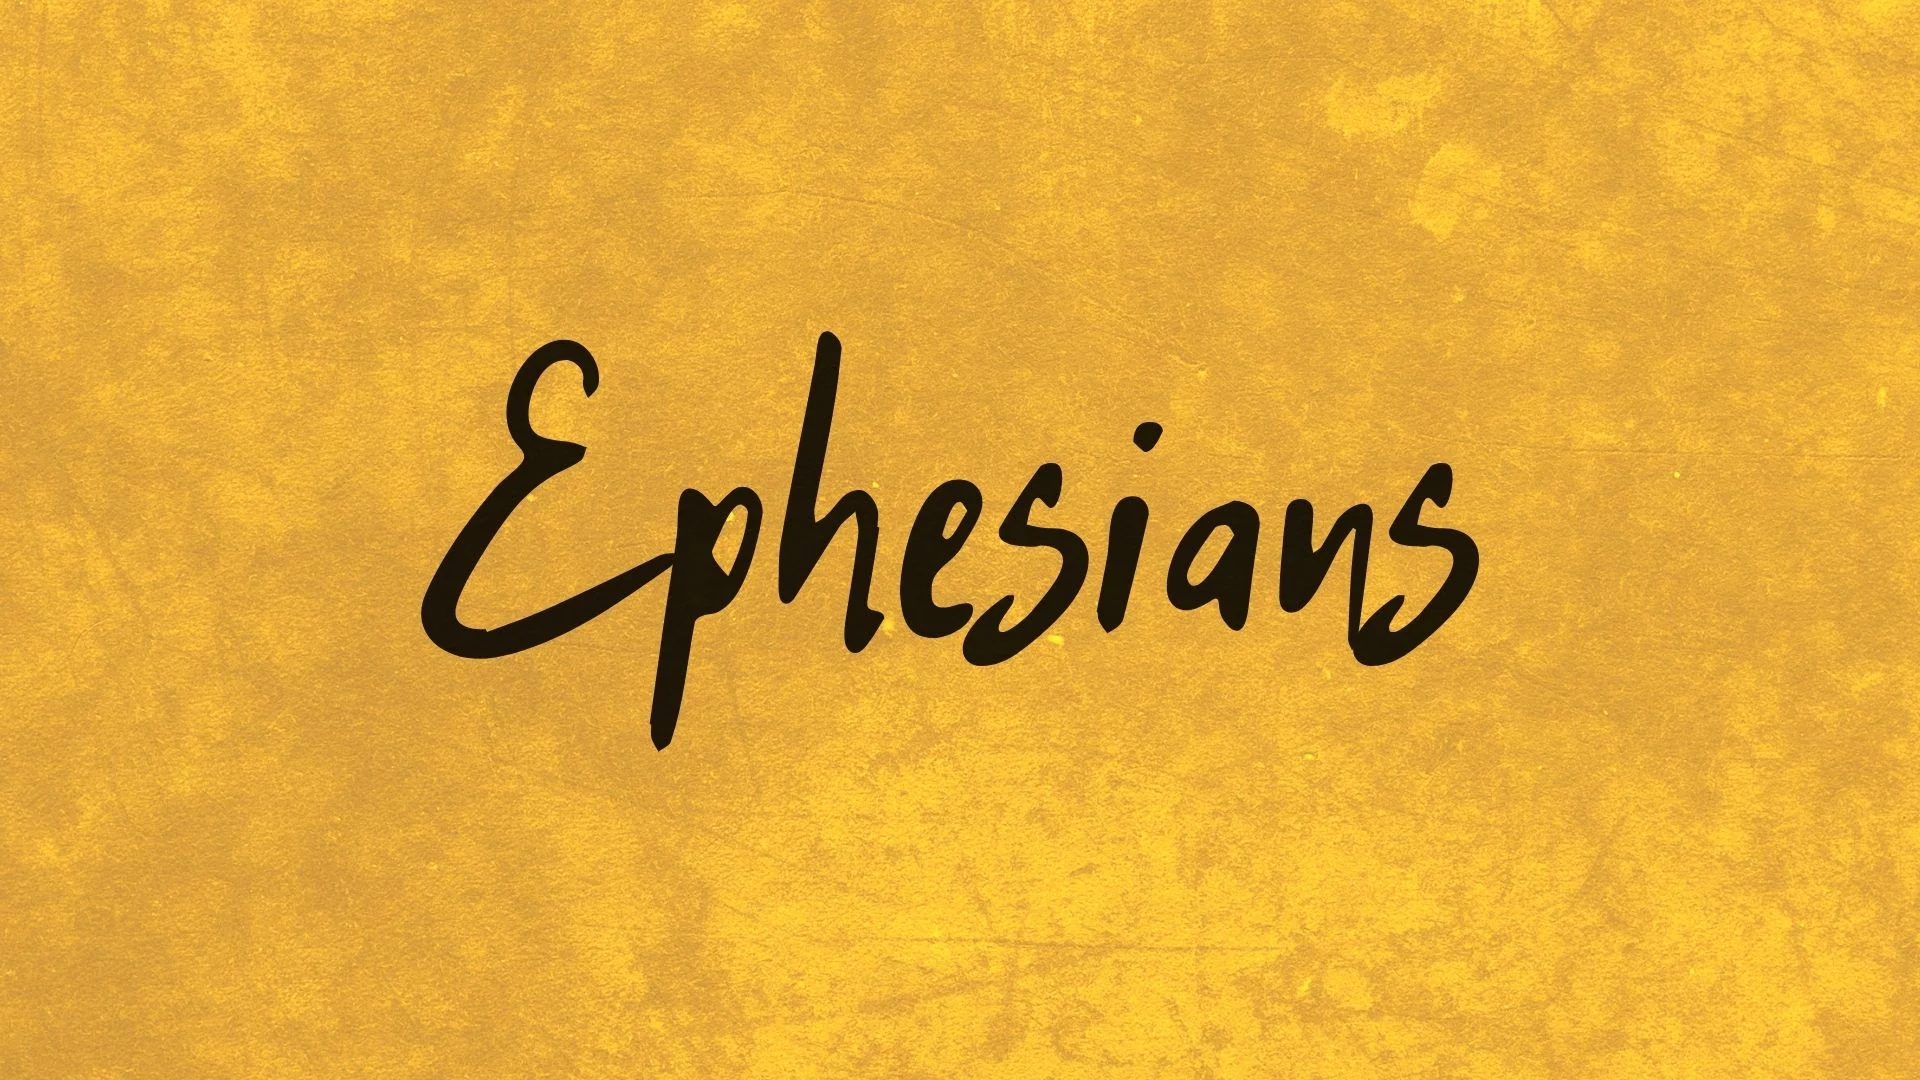 Ephesians Sermons Series Image